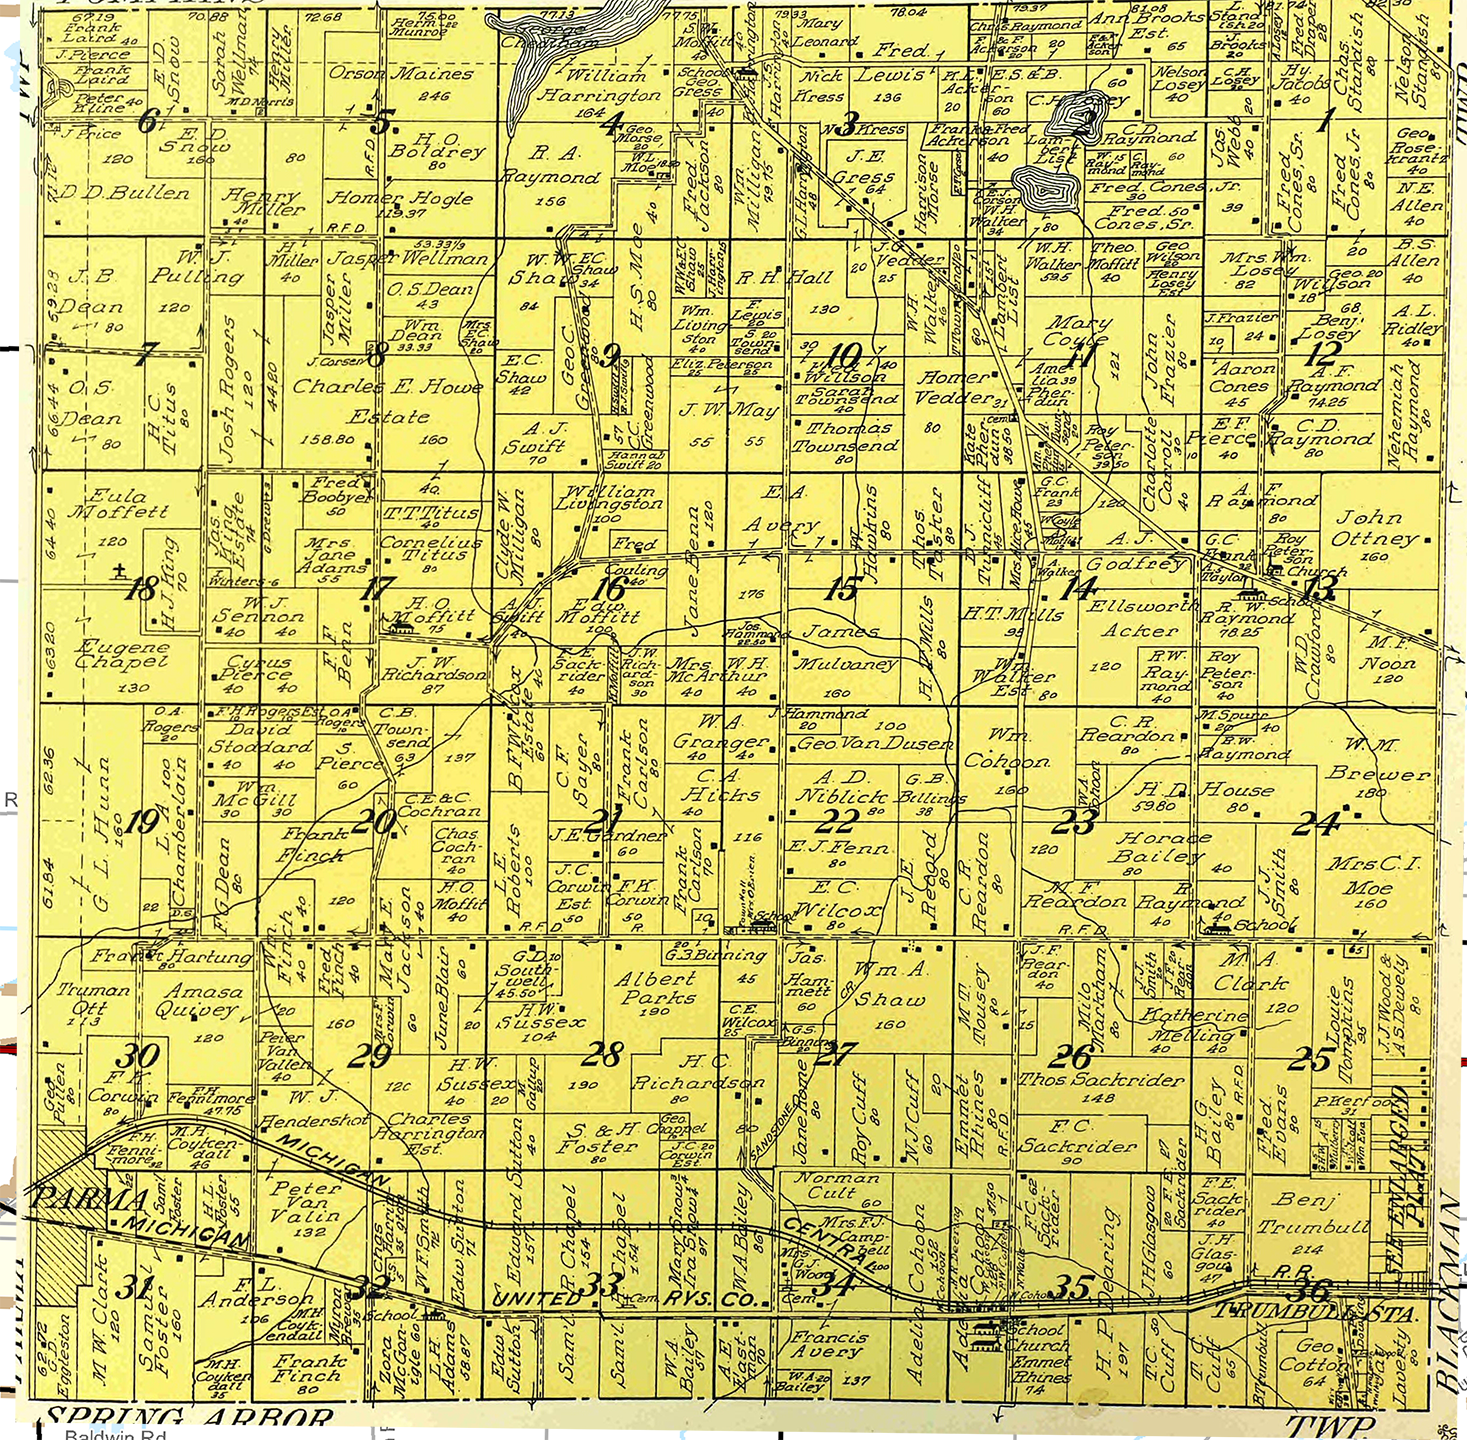 1911 Sandstone Township, Michigan landownership map